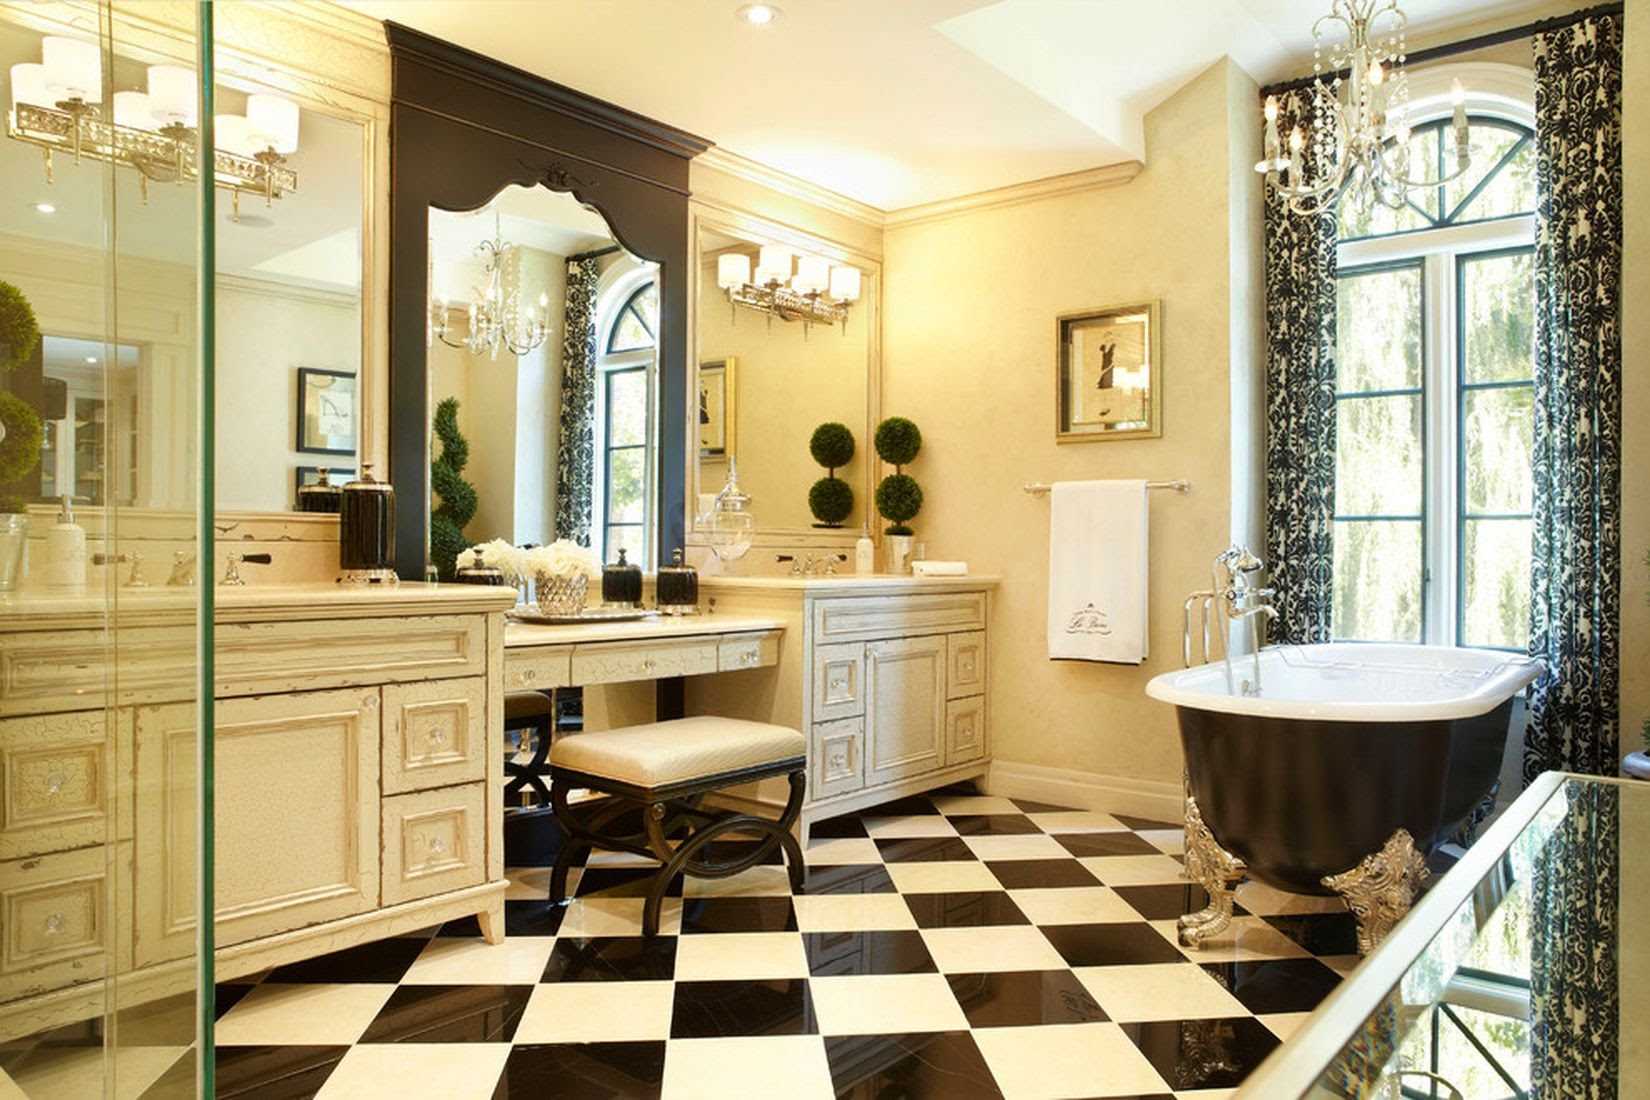 l'idée d'une salle de bain claire dans un style classique